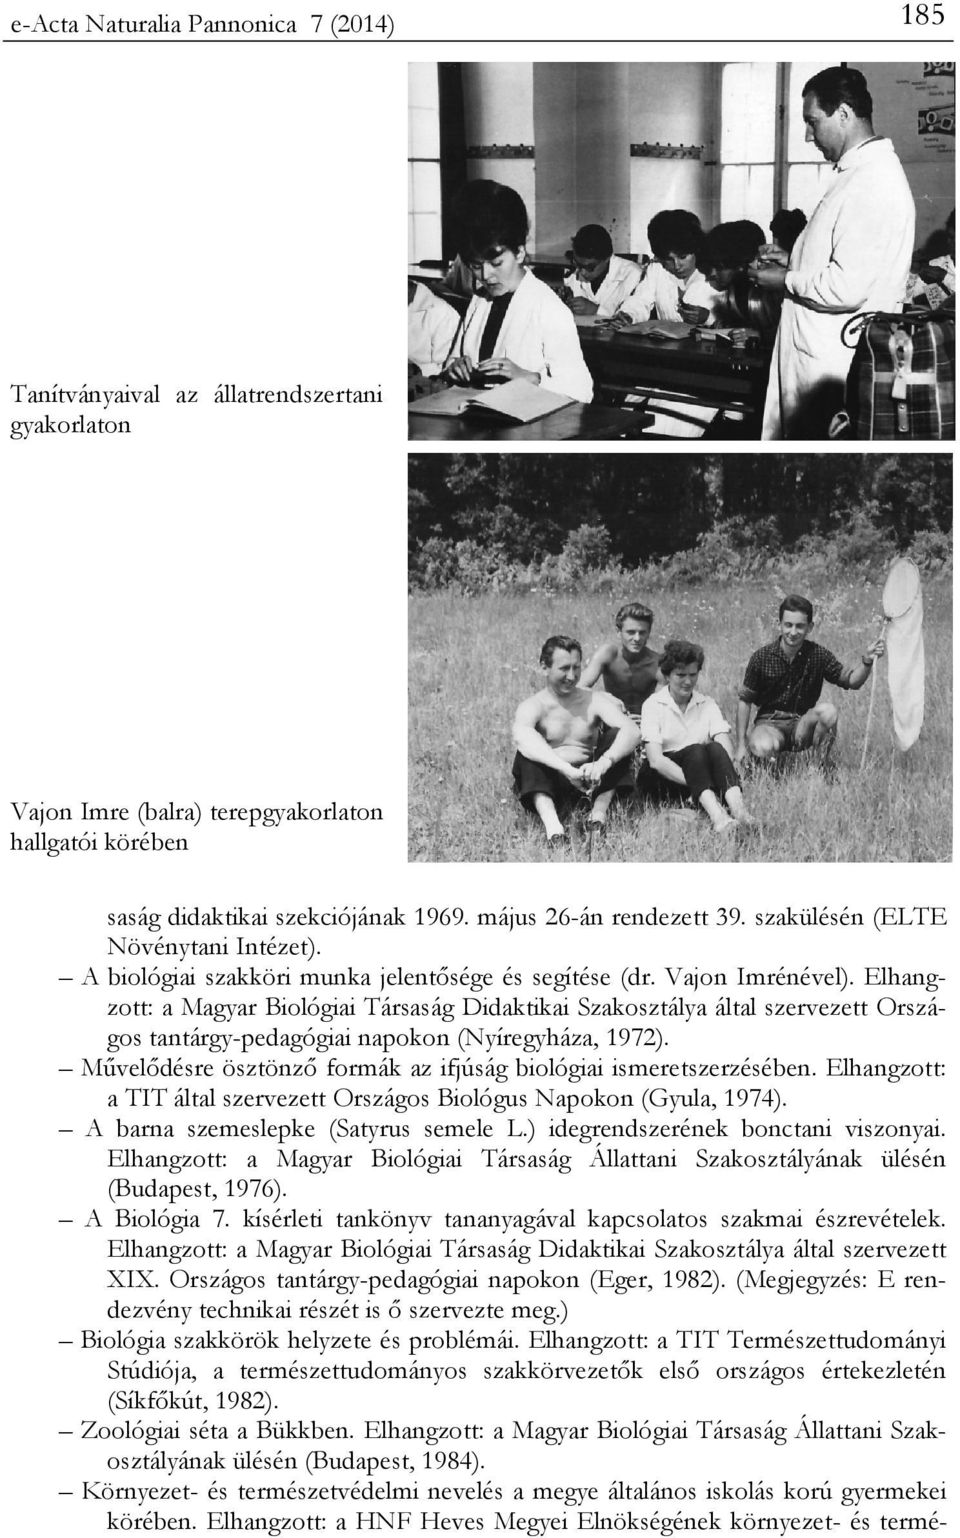 Elhangzott: a Magyar Biológiai Társaság Didaktikai Szakosztálya által szervezett Országos tantárgy-pedagógiai napokon (Nyíregyháza, 1972).